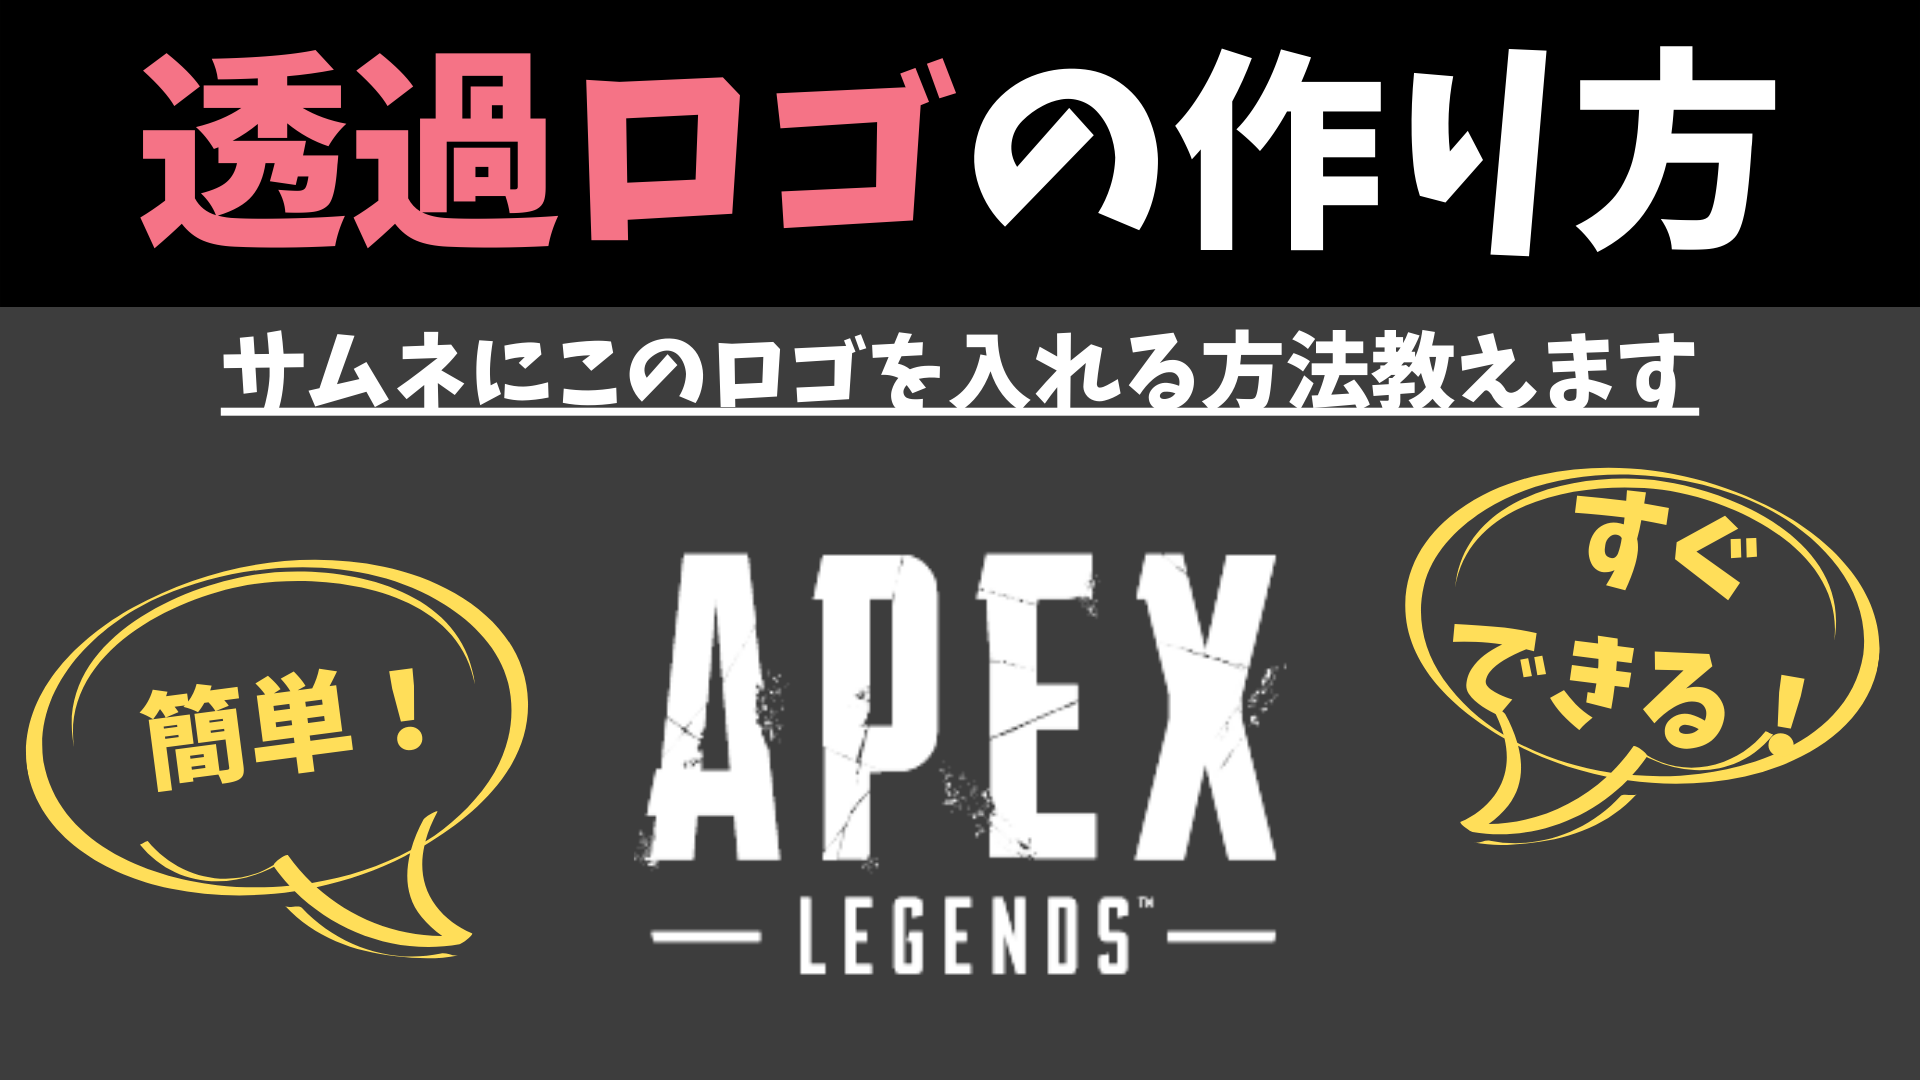 Apex ロゴの透過画像を作ったのでどうぞ サムネ作成時に便利 Shikafo Blog